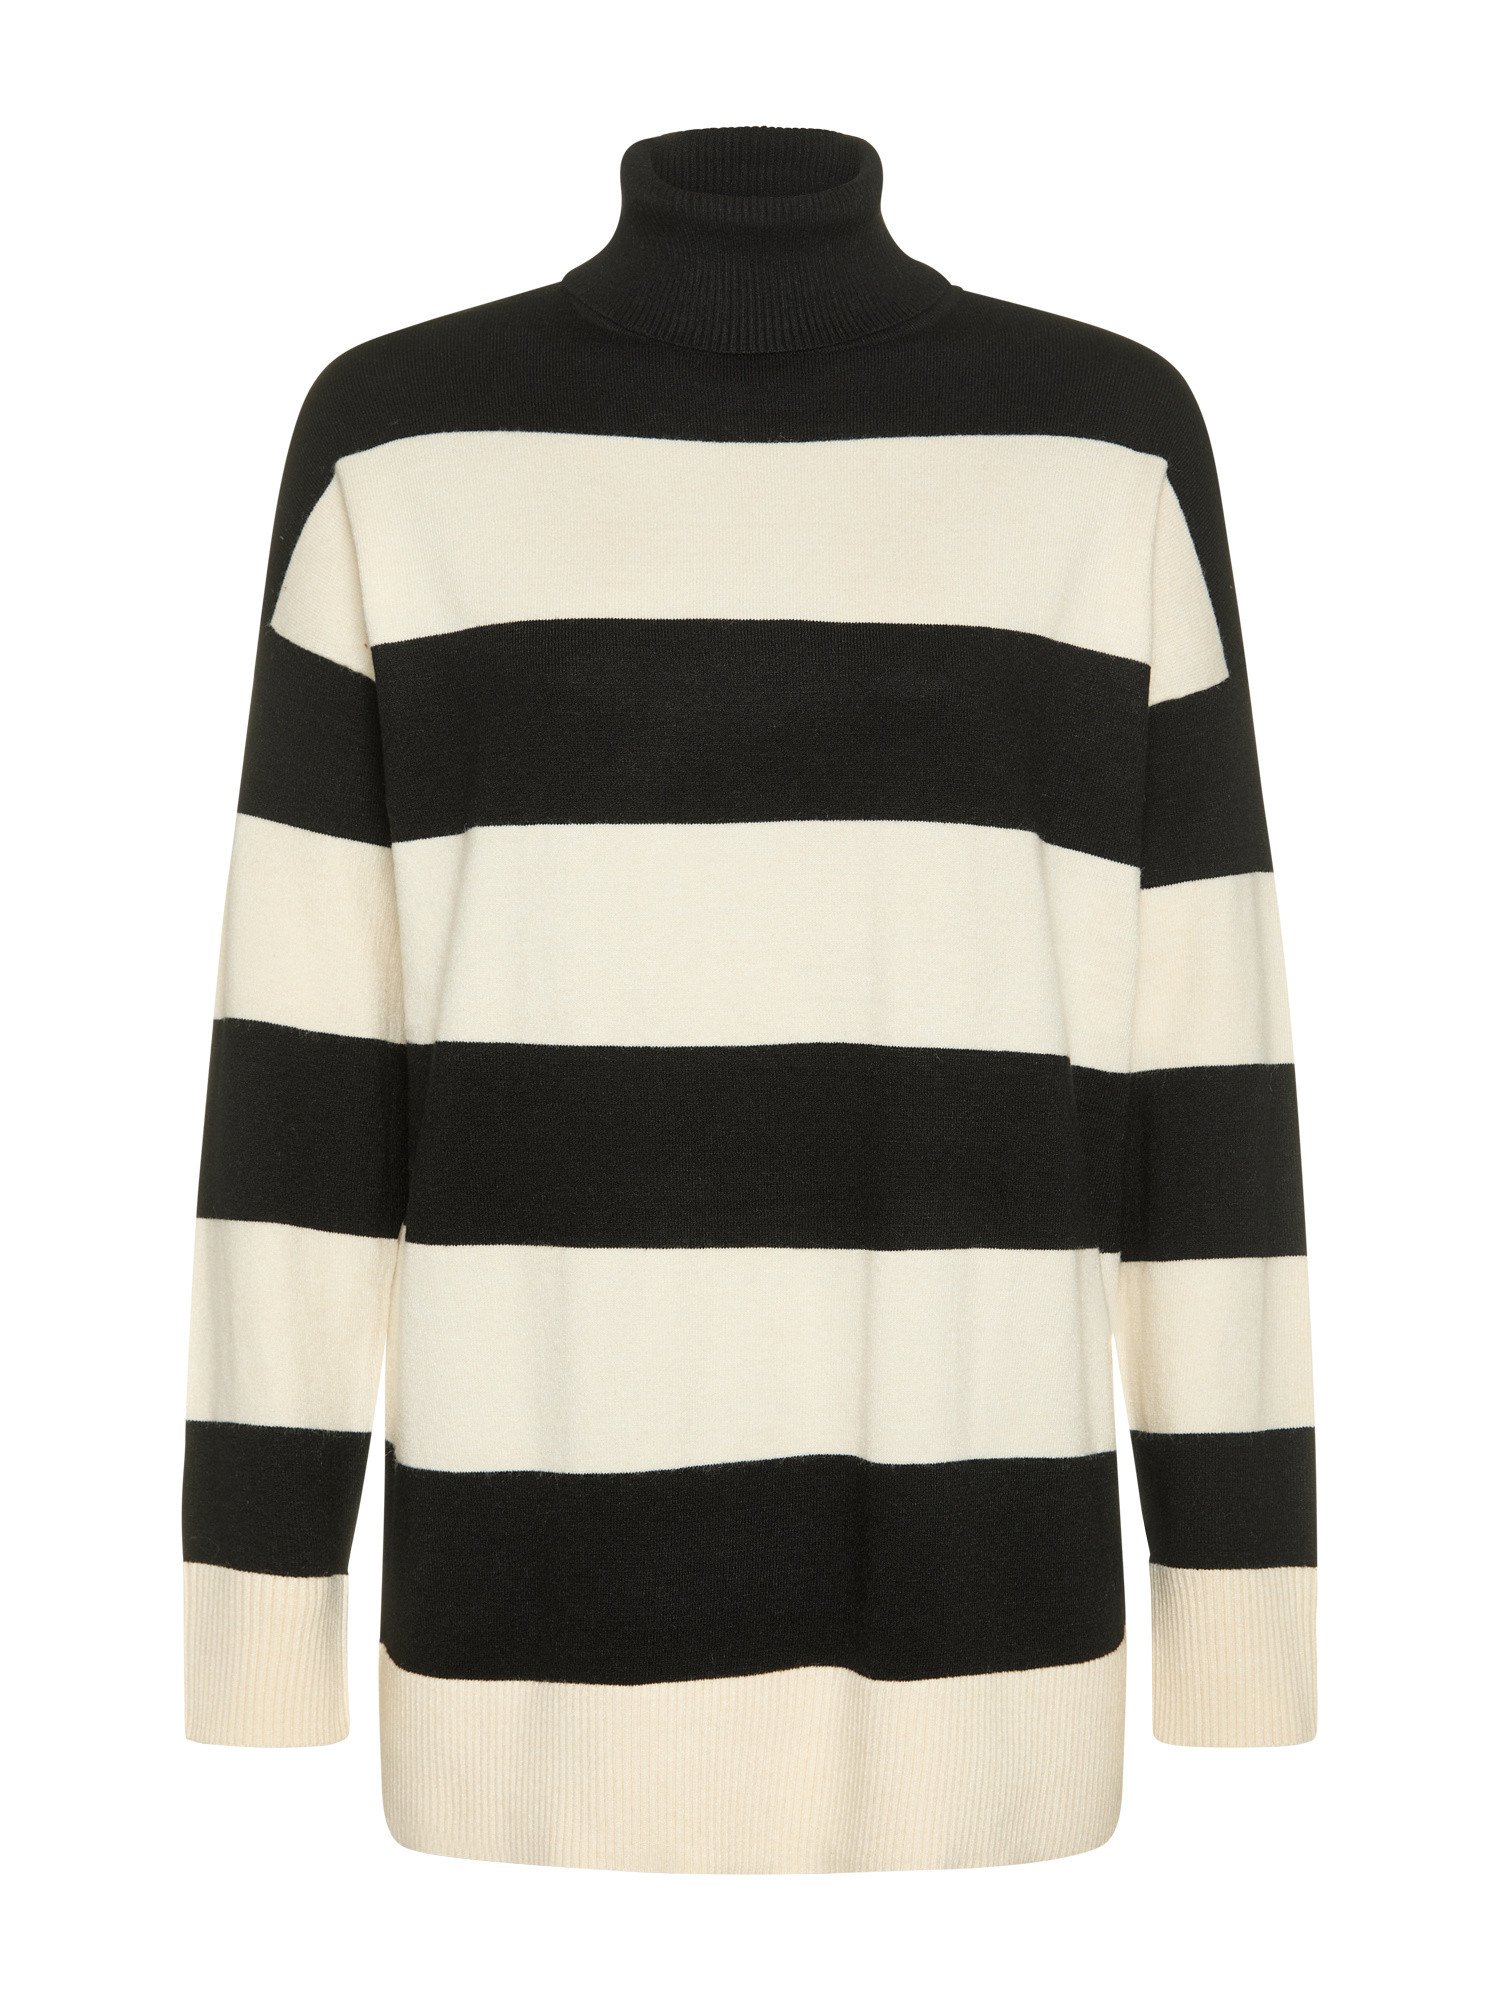 Only - Striped knit turtleneck, Black, large image number 0